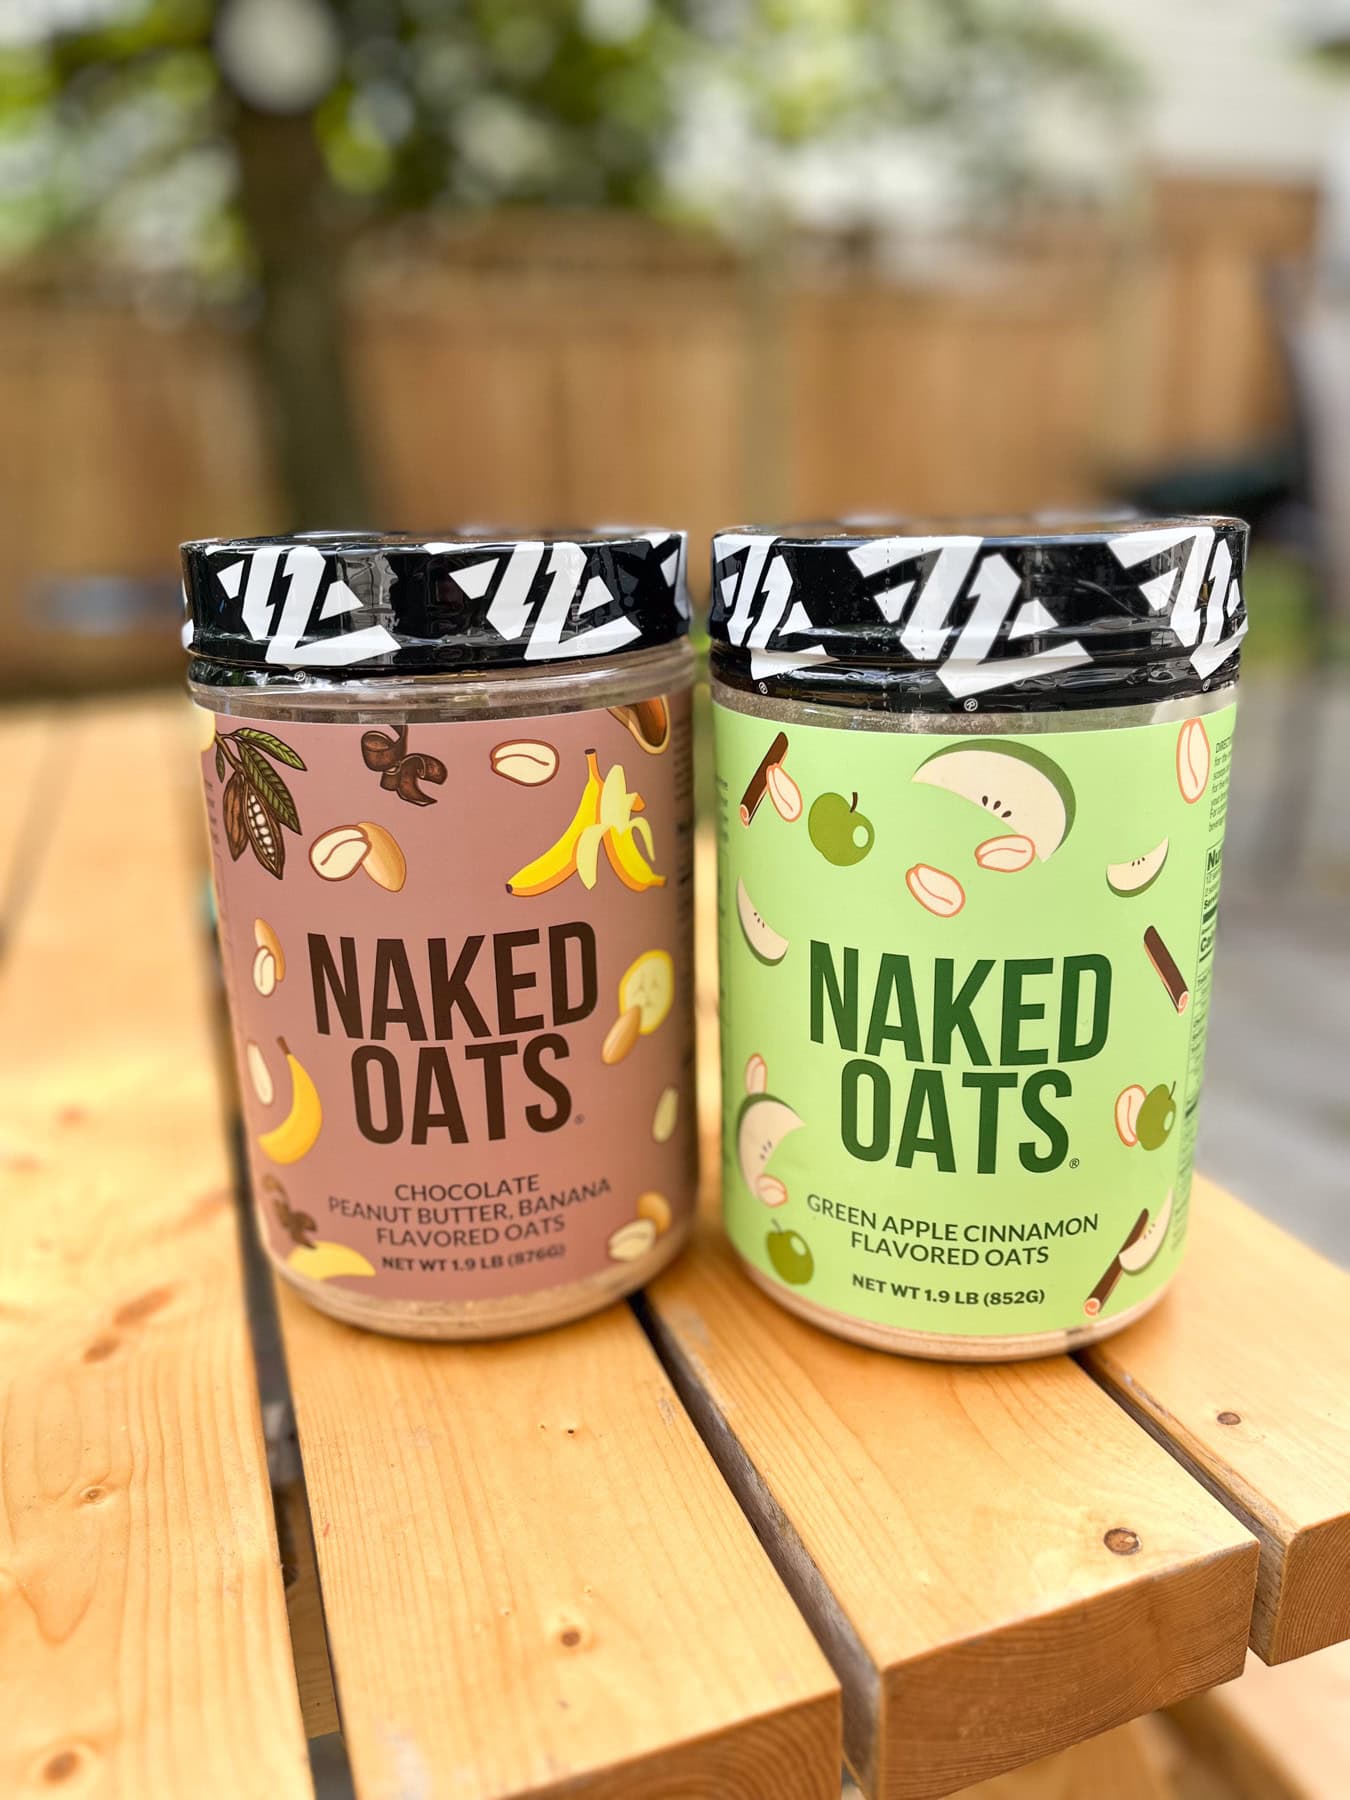 naked oats